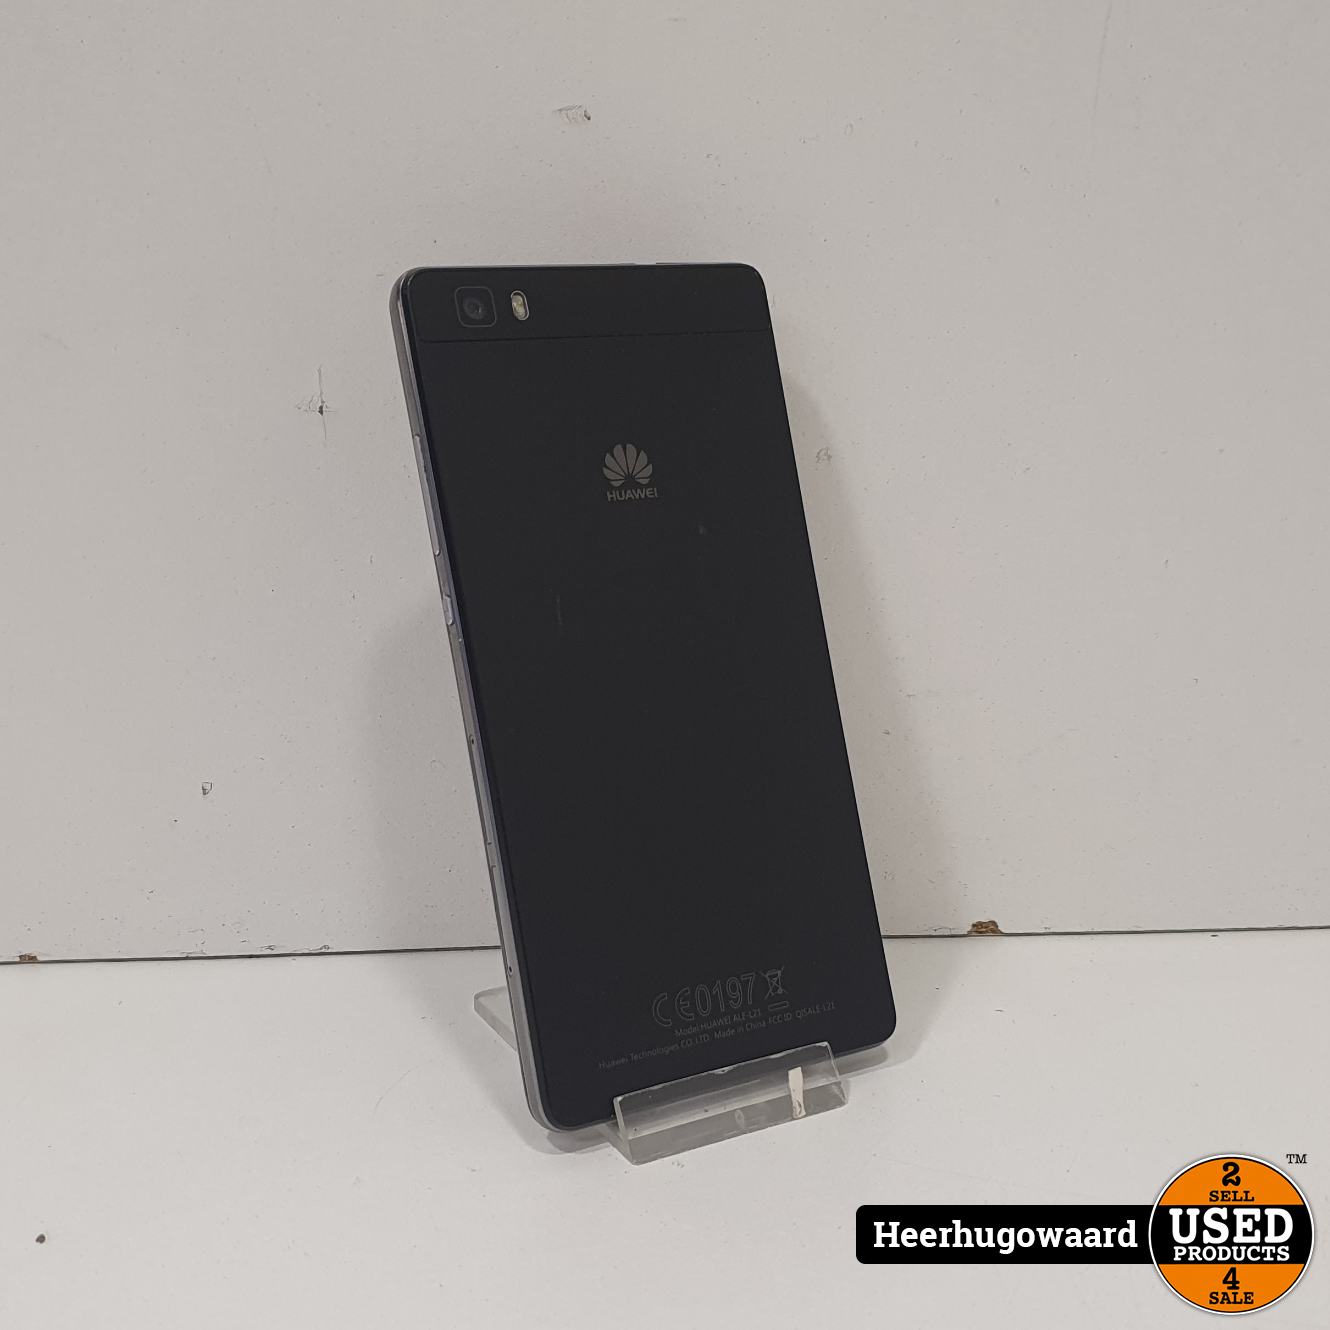 tarief Beide schild Huawei P8 Lite 16GB Black in Goede Staat - Used Products Heerhugowaard